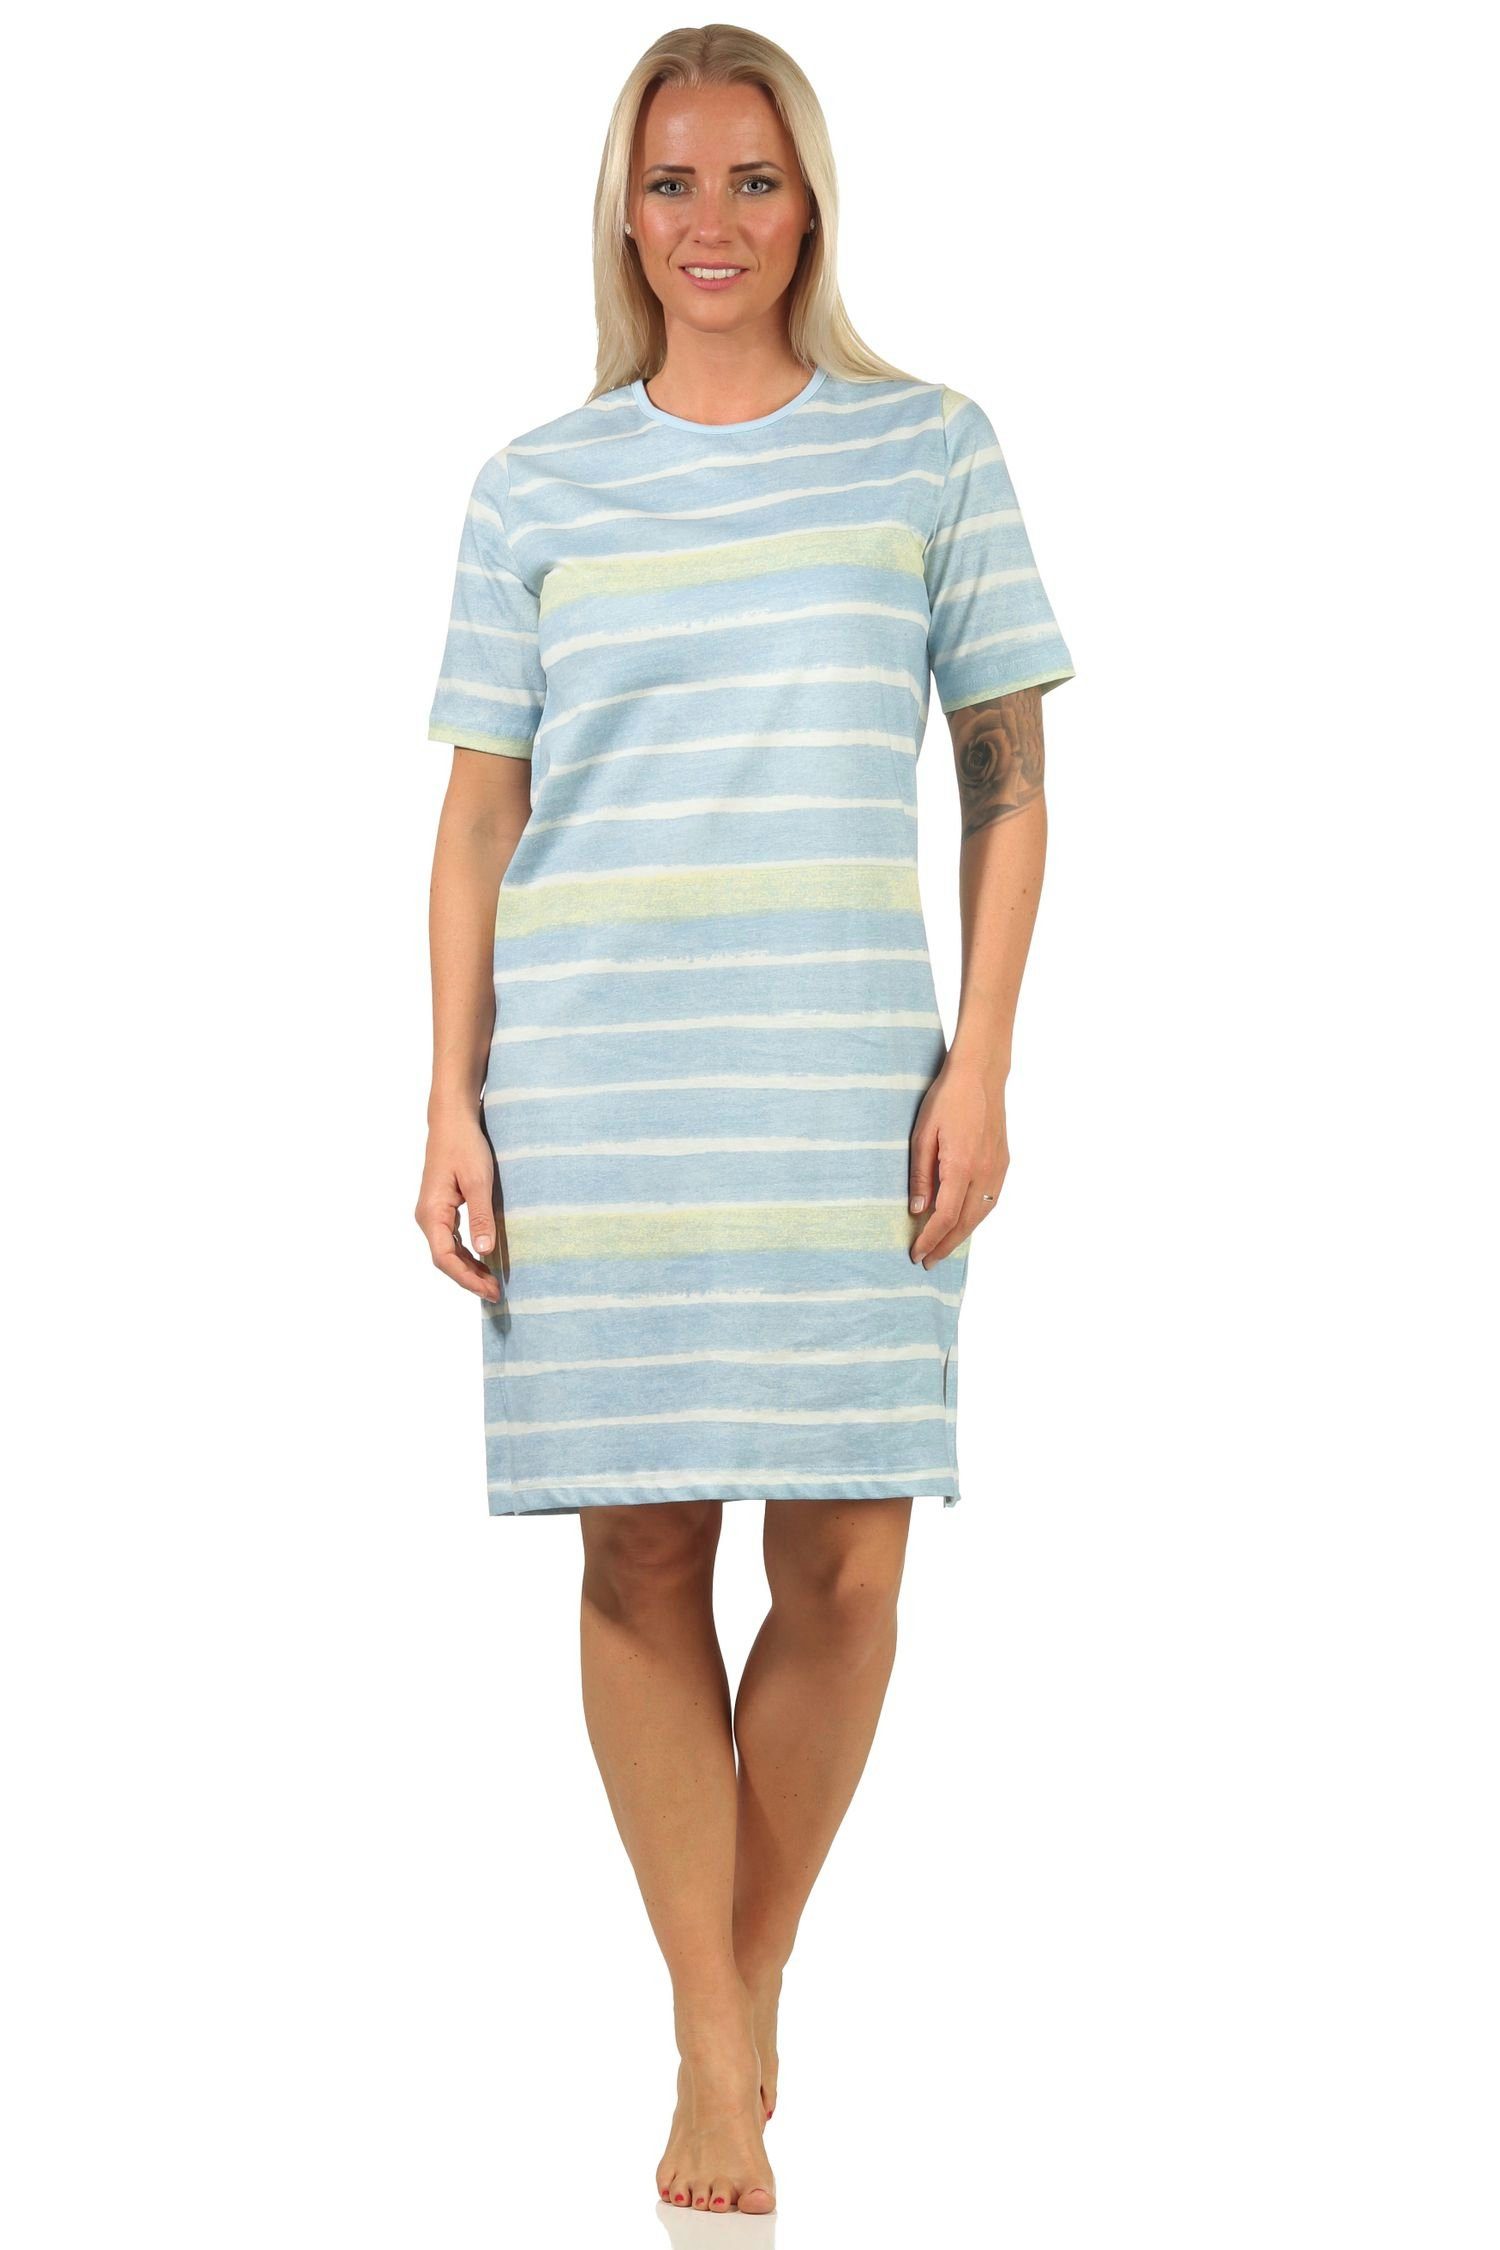 Normann Nachthemd Damen – 112 464 hellblau Look kurzarm farbenfrohen im Nachthemd Streifen